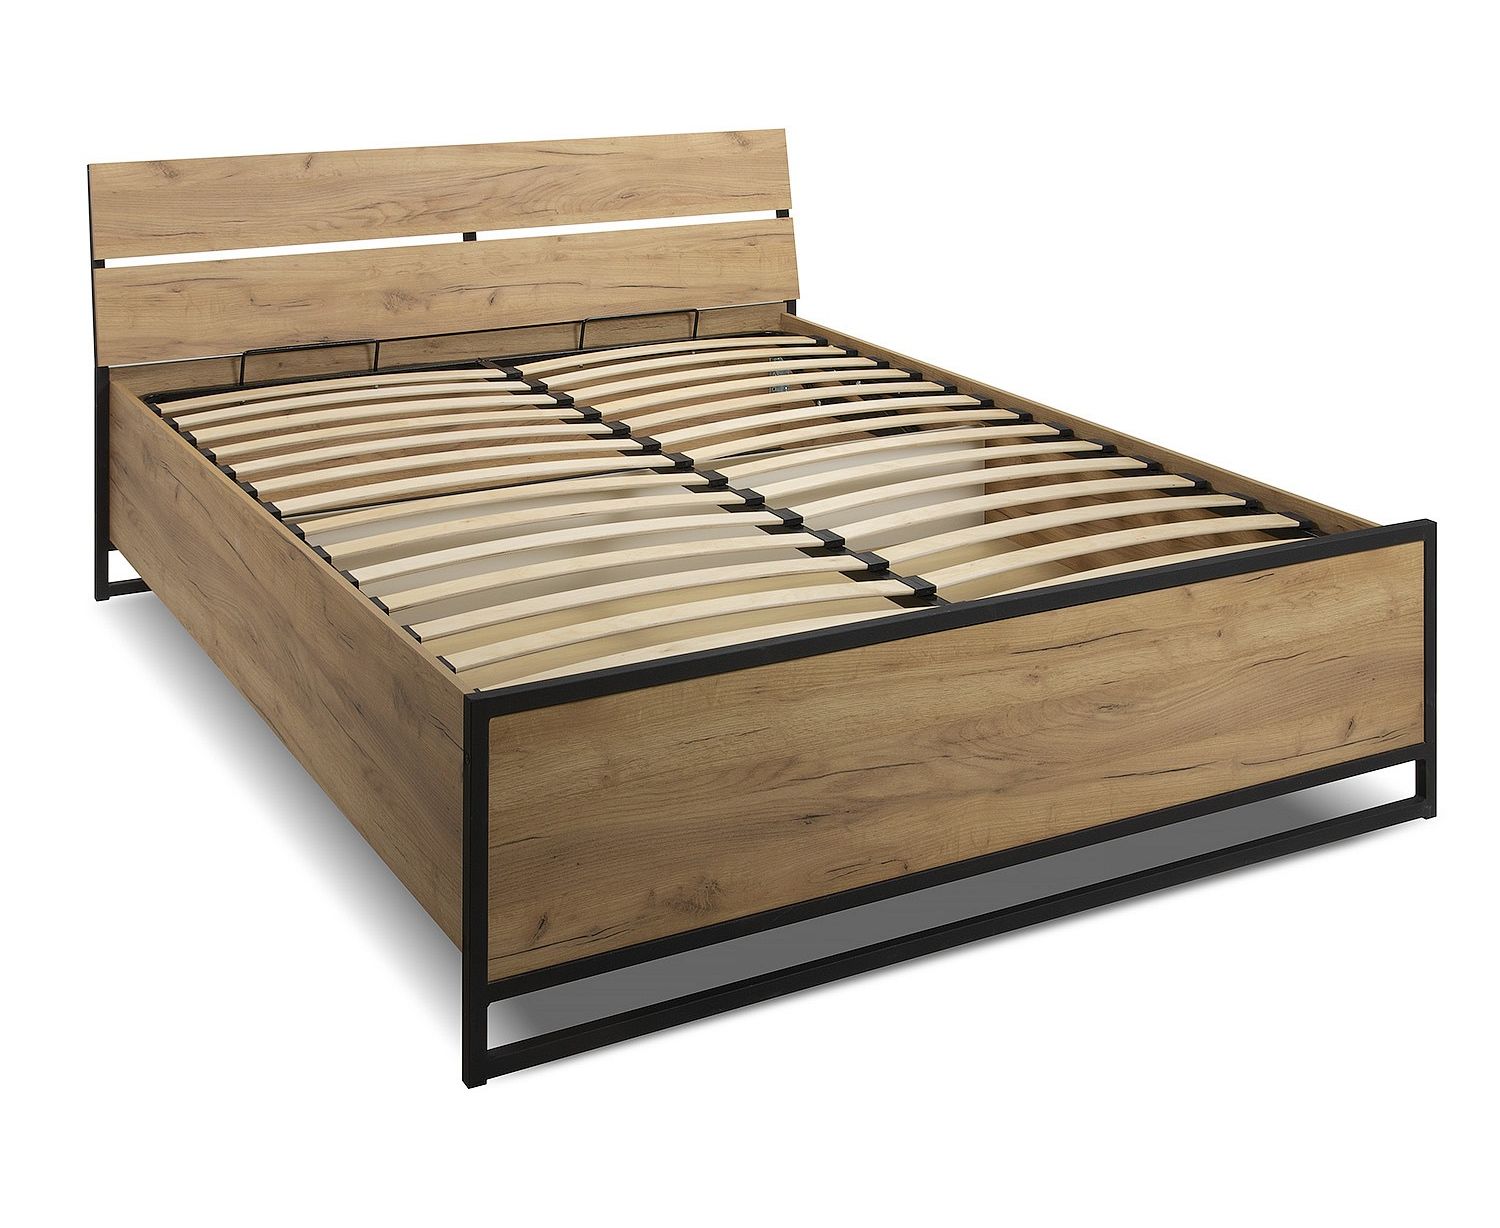 Woodcraft кровать Неман